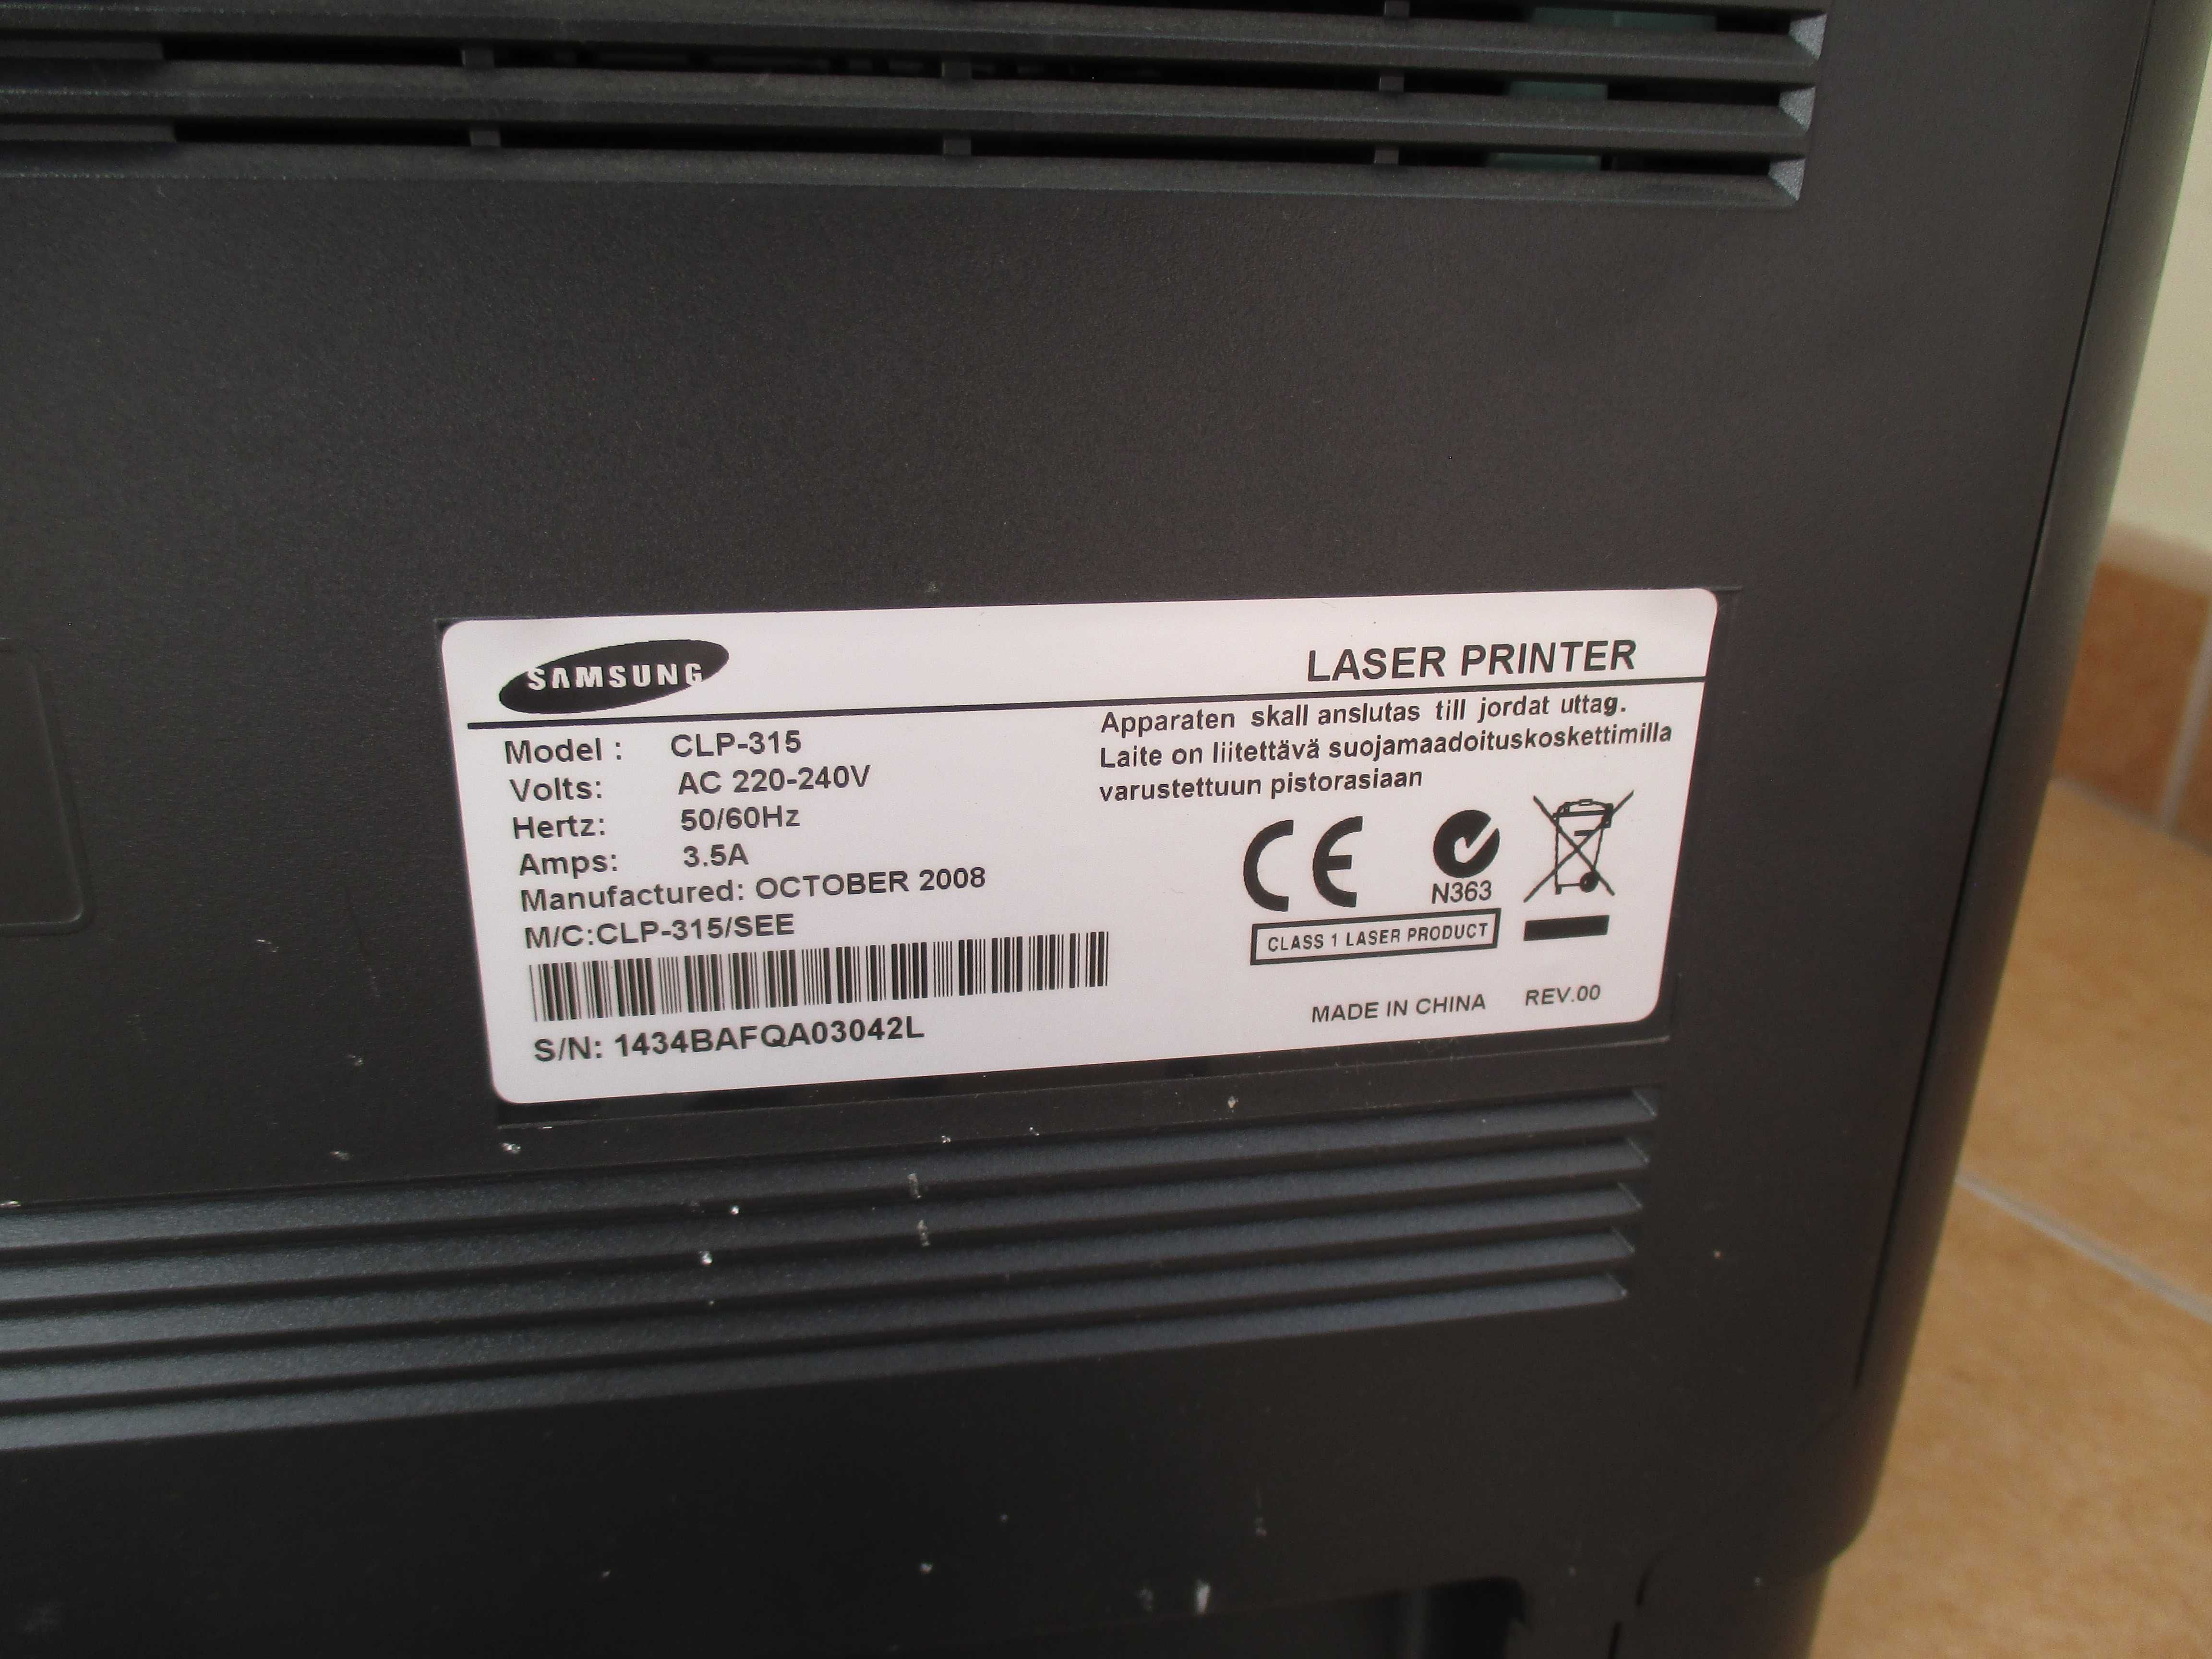 Impressora Laser a cores Samsung CLP-315 com erro